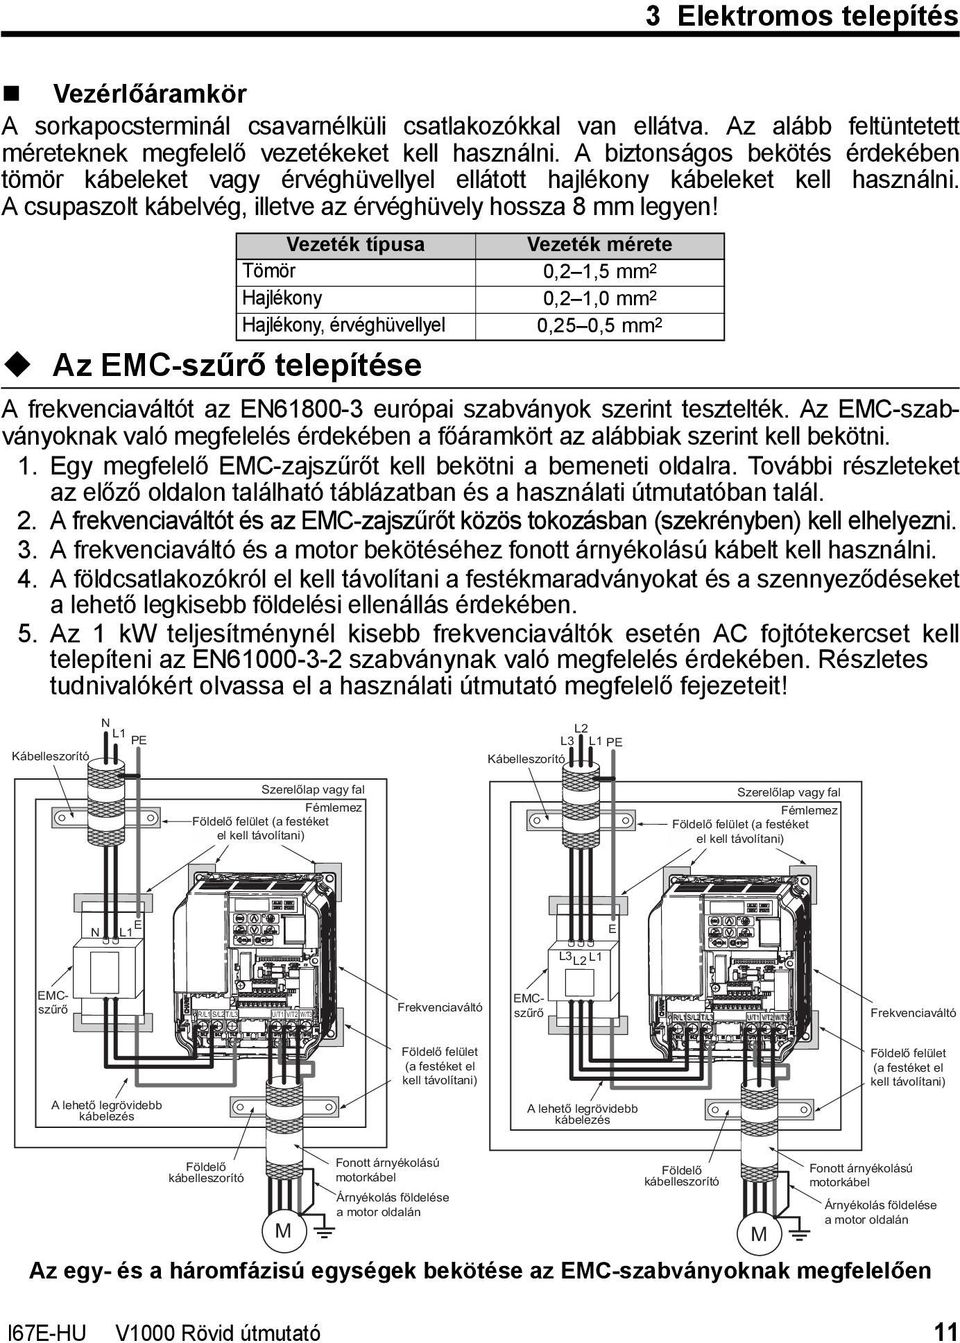 Az EMC-szűrő telepítése Vezeték típusa Vezeték mérete Tömör 0,2 1,5 mm 2 Hajlékony 0,2 1,0 mm 2 Hajlékony, érvéghüvellyel 0,25 0,5 mm 2 A frekvenciaváltót az EN61800-3 európai szabványok szerint